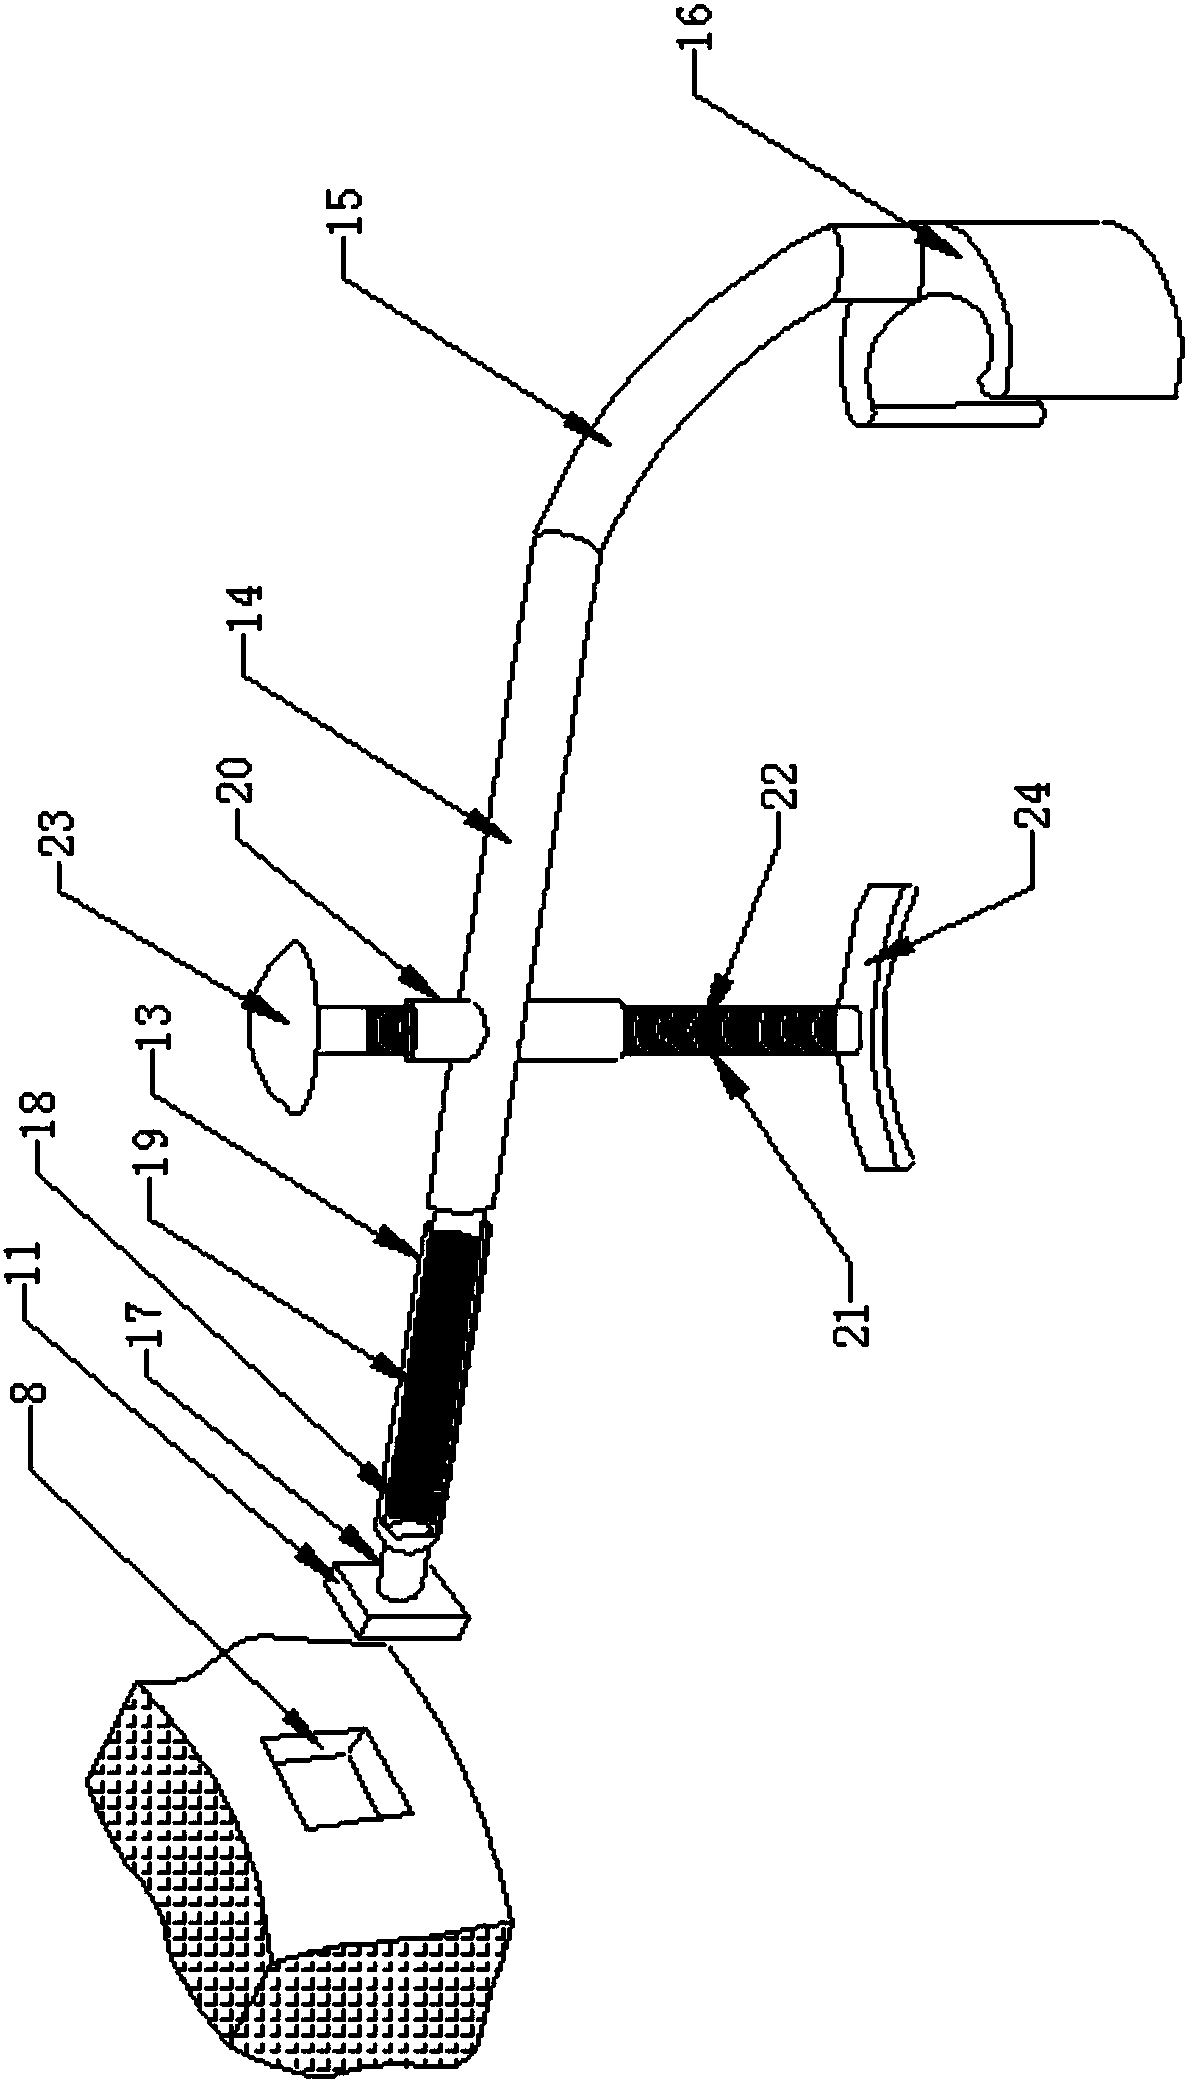 Neck-shoulder correction device